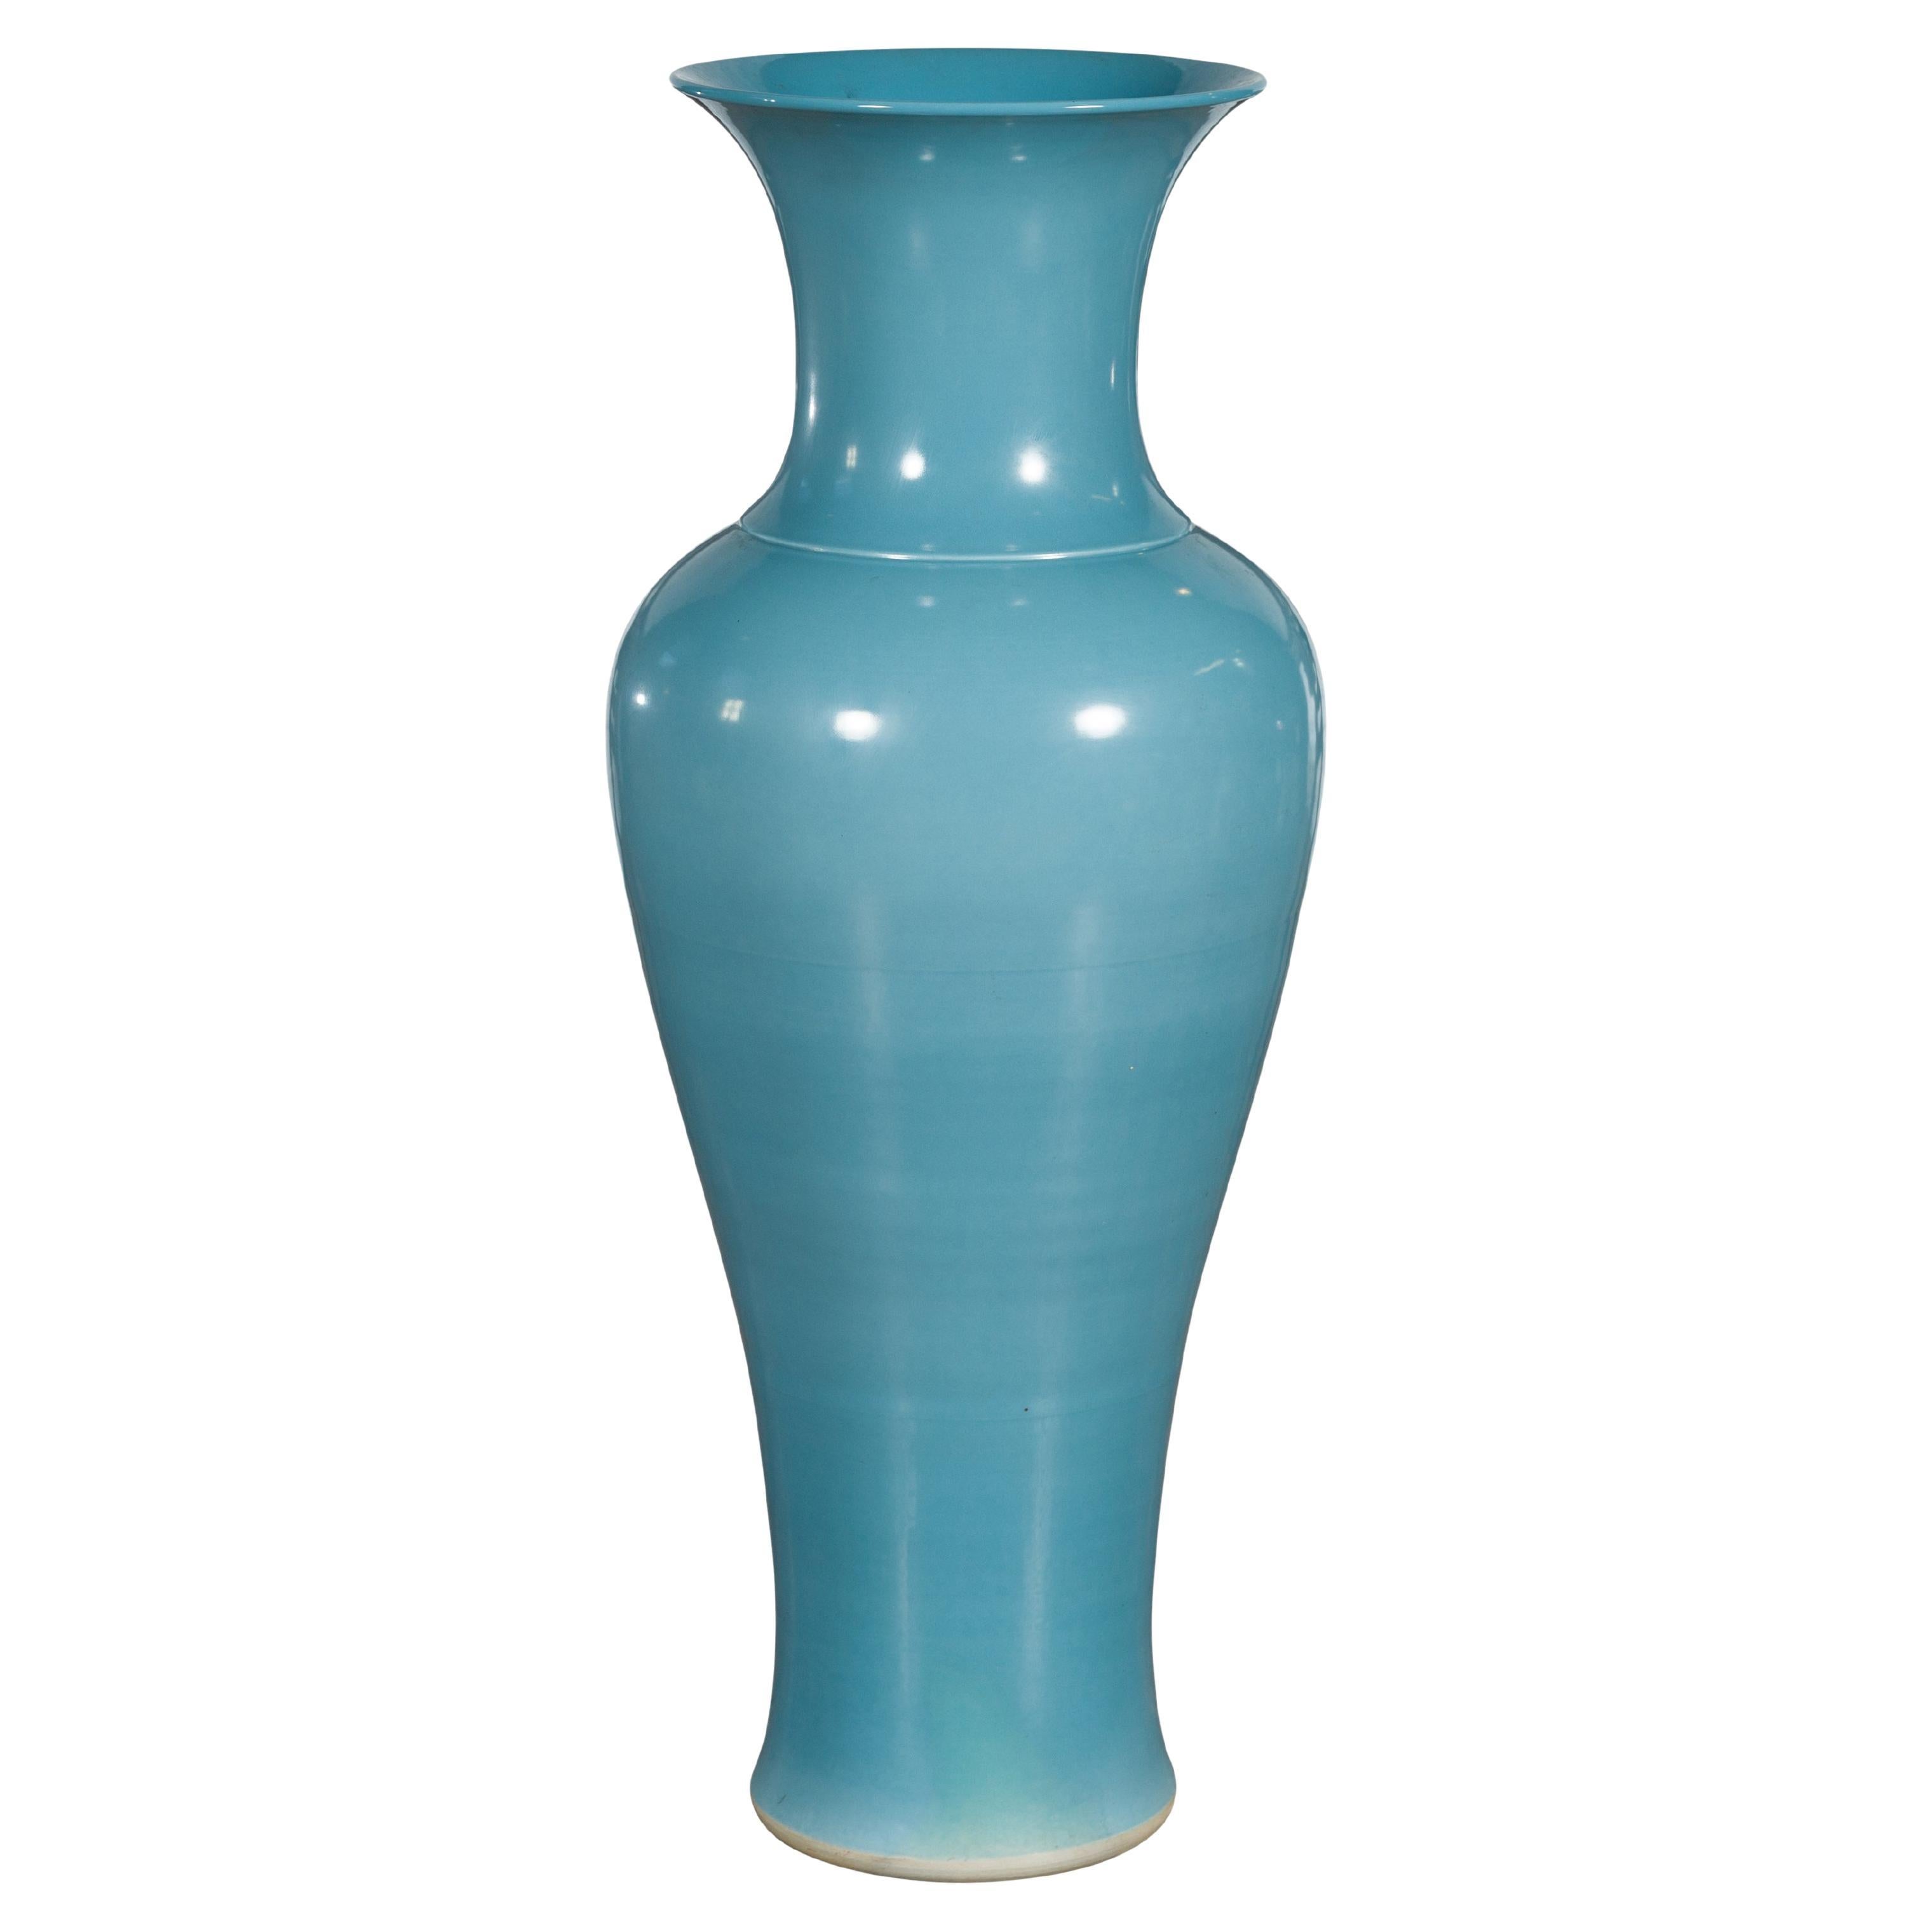 Grand vase en céramique artisanale émaillée bleue douce de la collection Prem avec col évasé